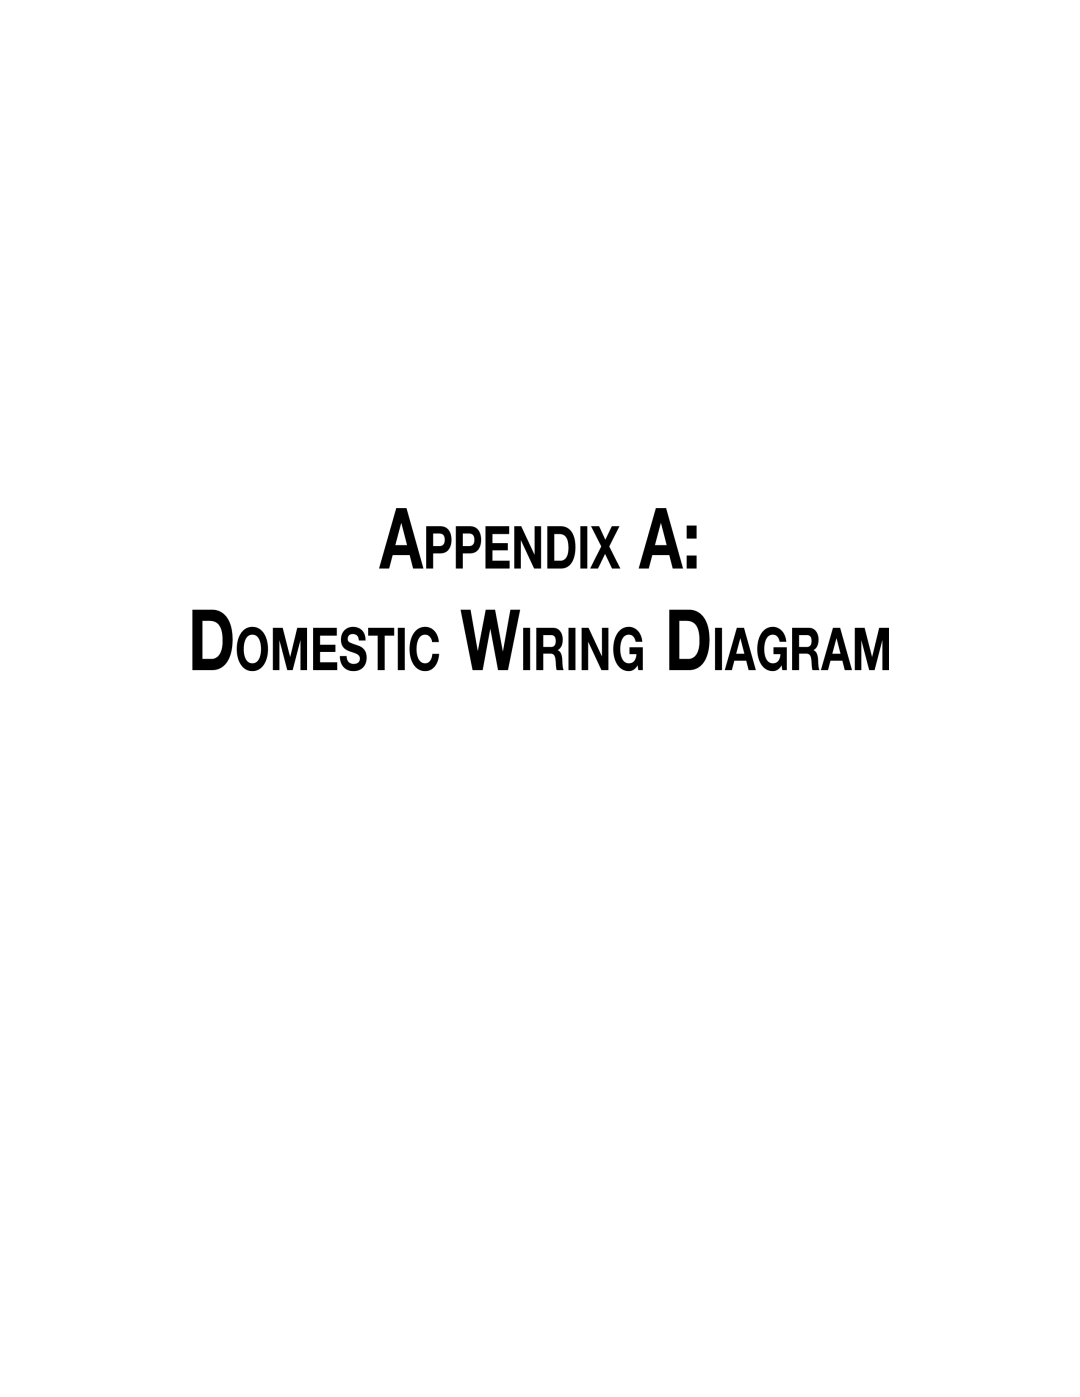 Hill Phoenix P074749F dimensions Appendix A, Domestic Wiring Diagram 